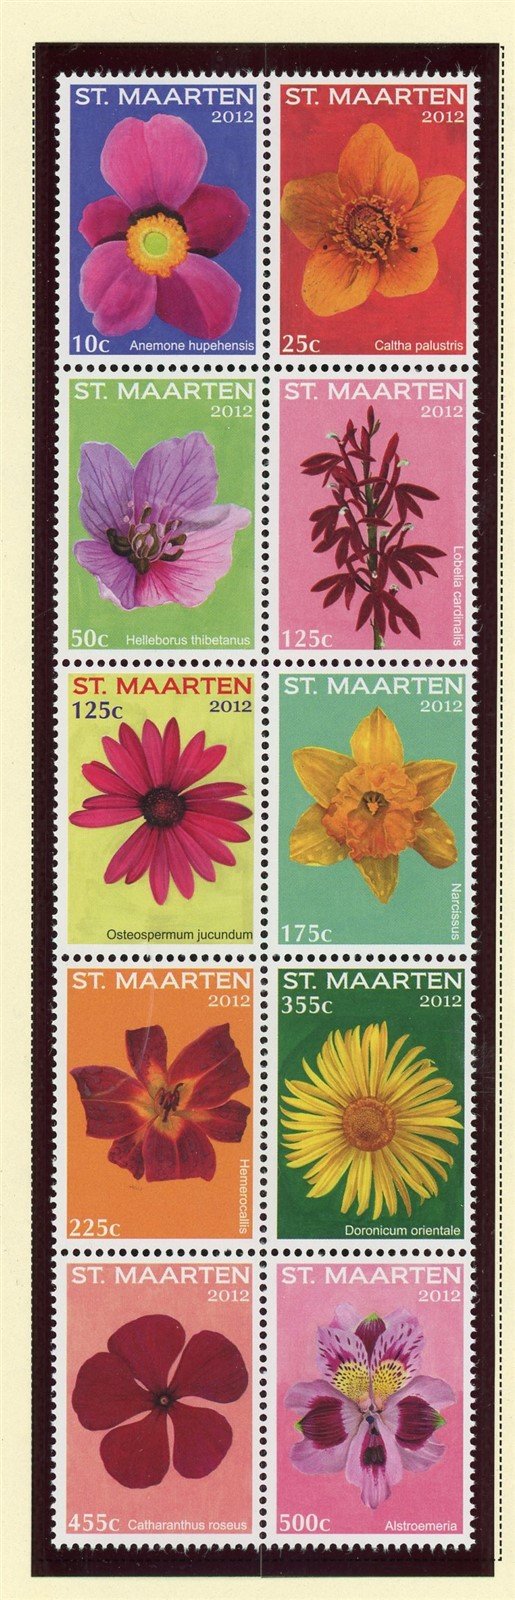 St. Martin Scott #23 MNH BLOCK of 10 Flowers FLORA CV$23+ 427628